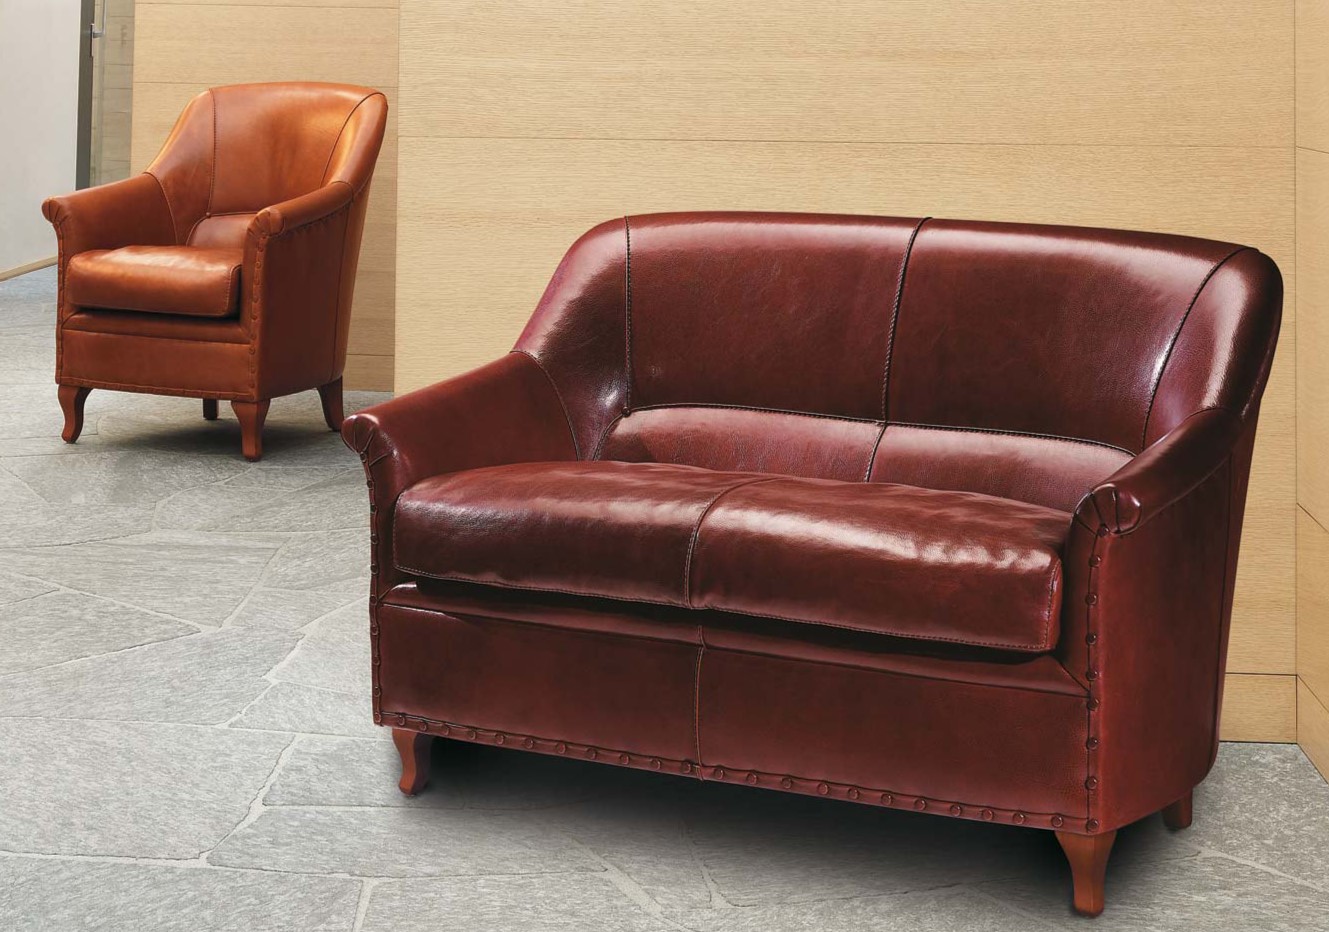 Небольшой кожаный диван можно отлично комбинировать с креслом в интерьер